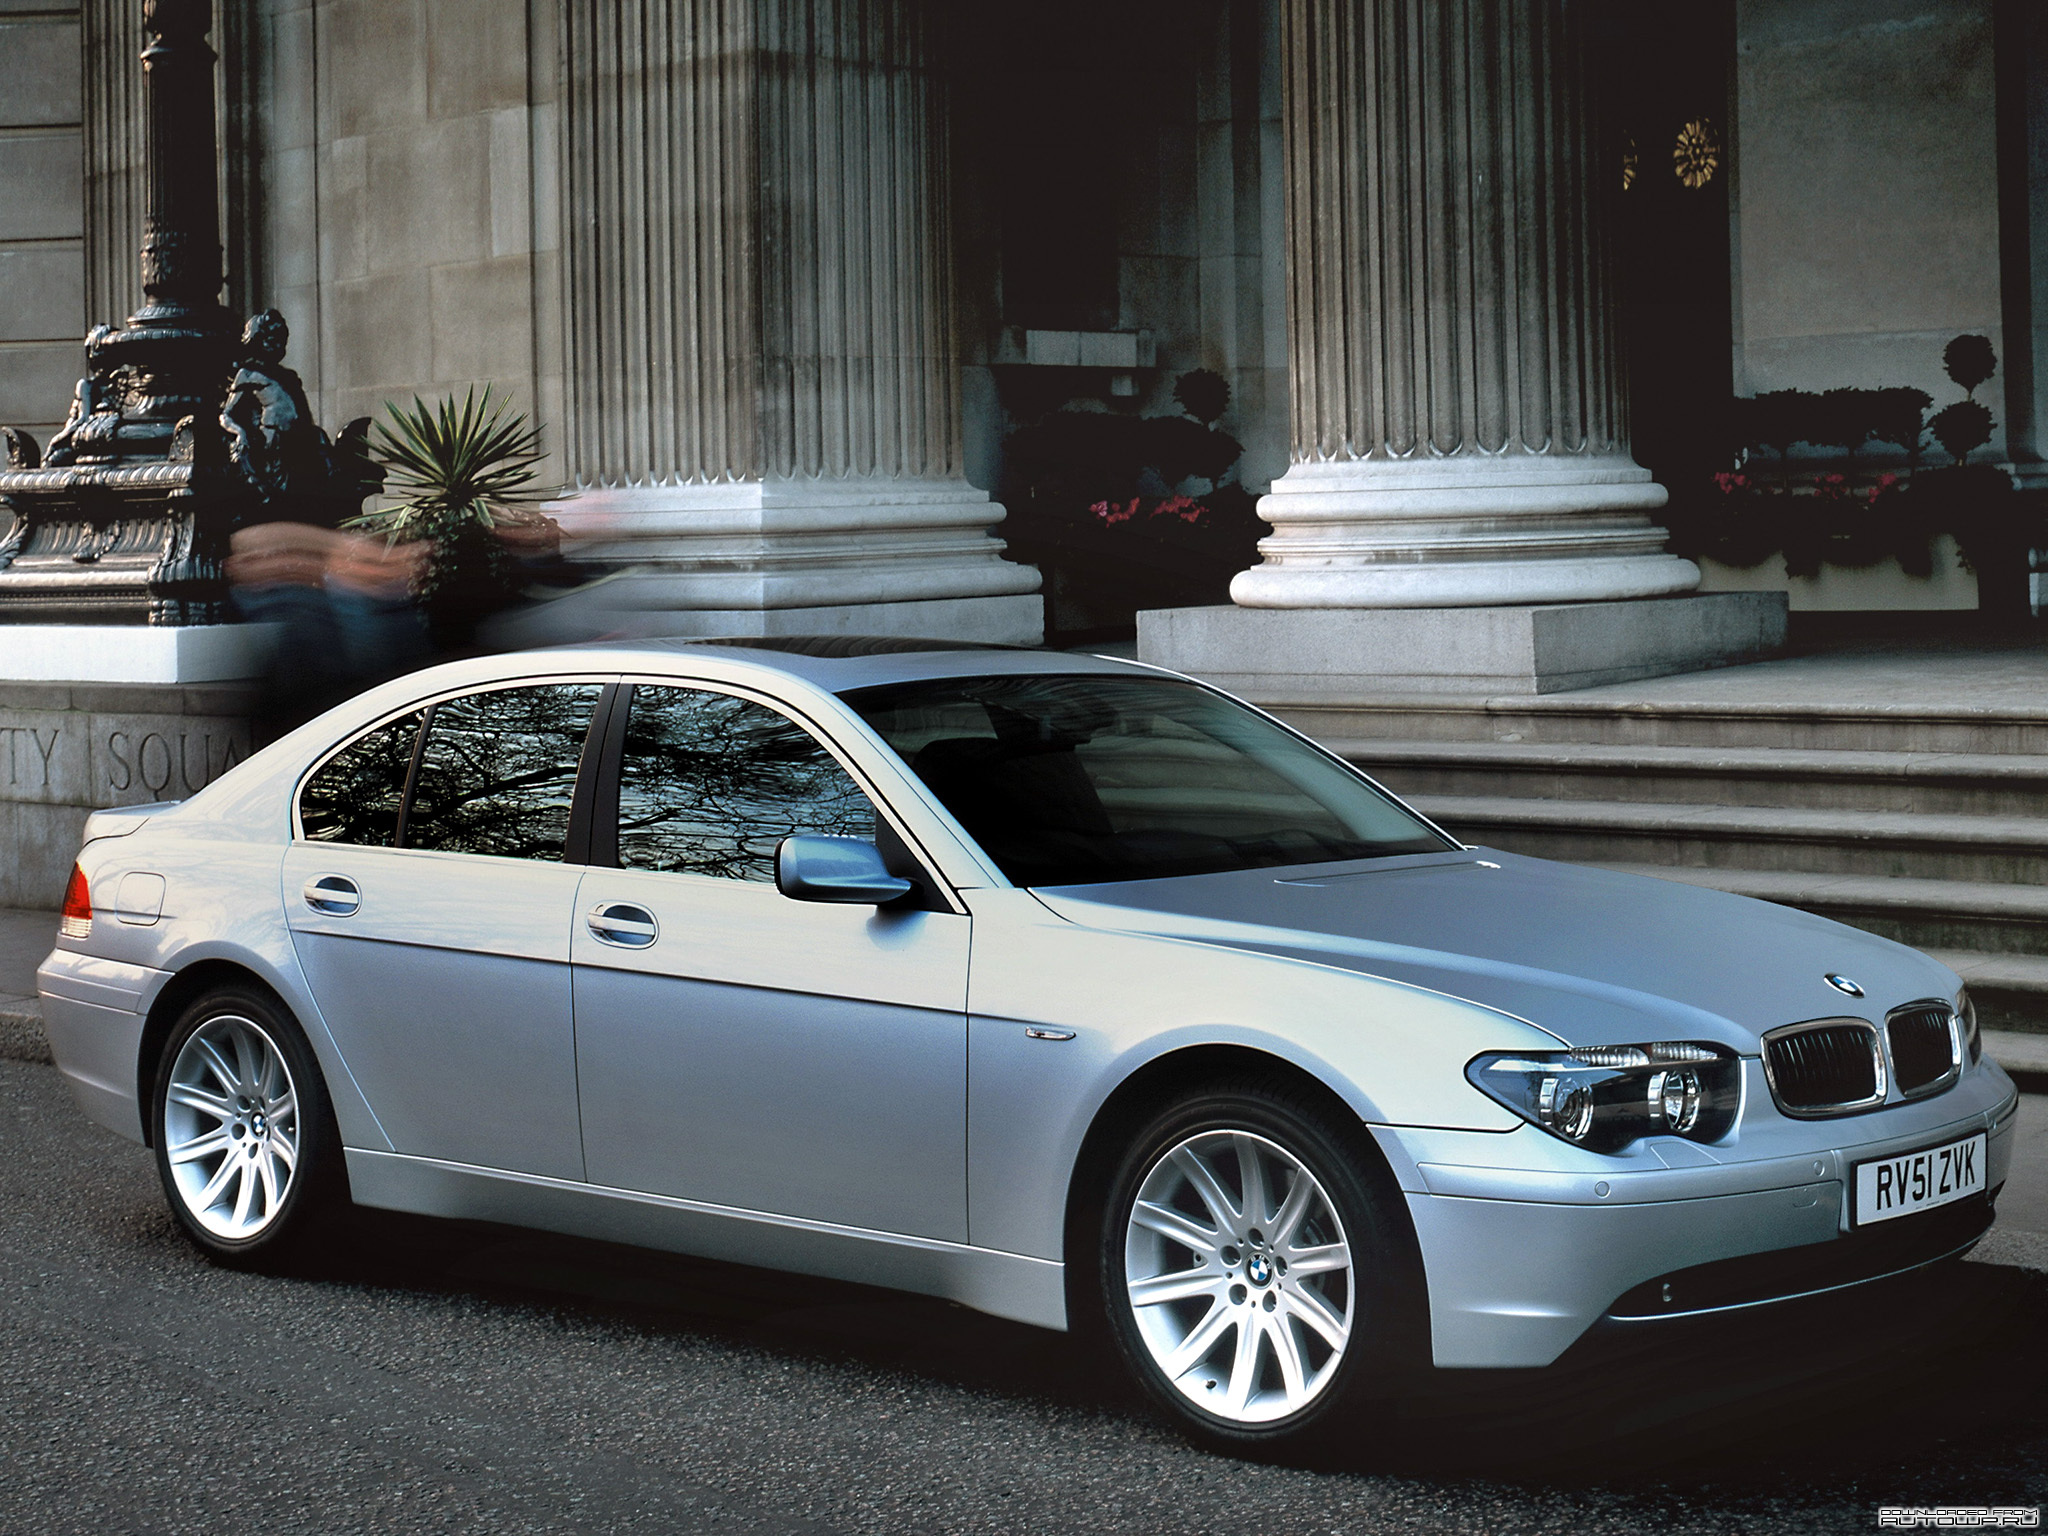 BMW 7 Series E65 Design, Model Range, and Depreciation Factors